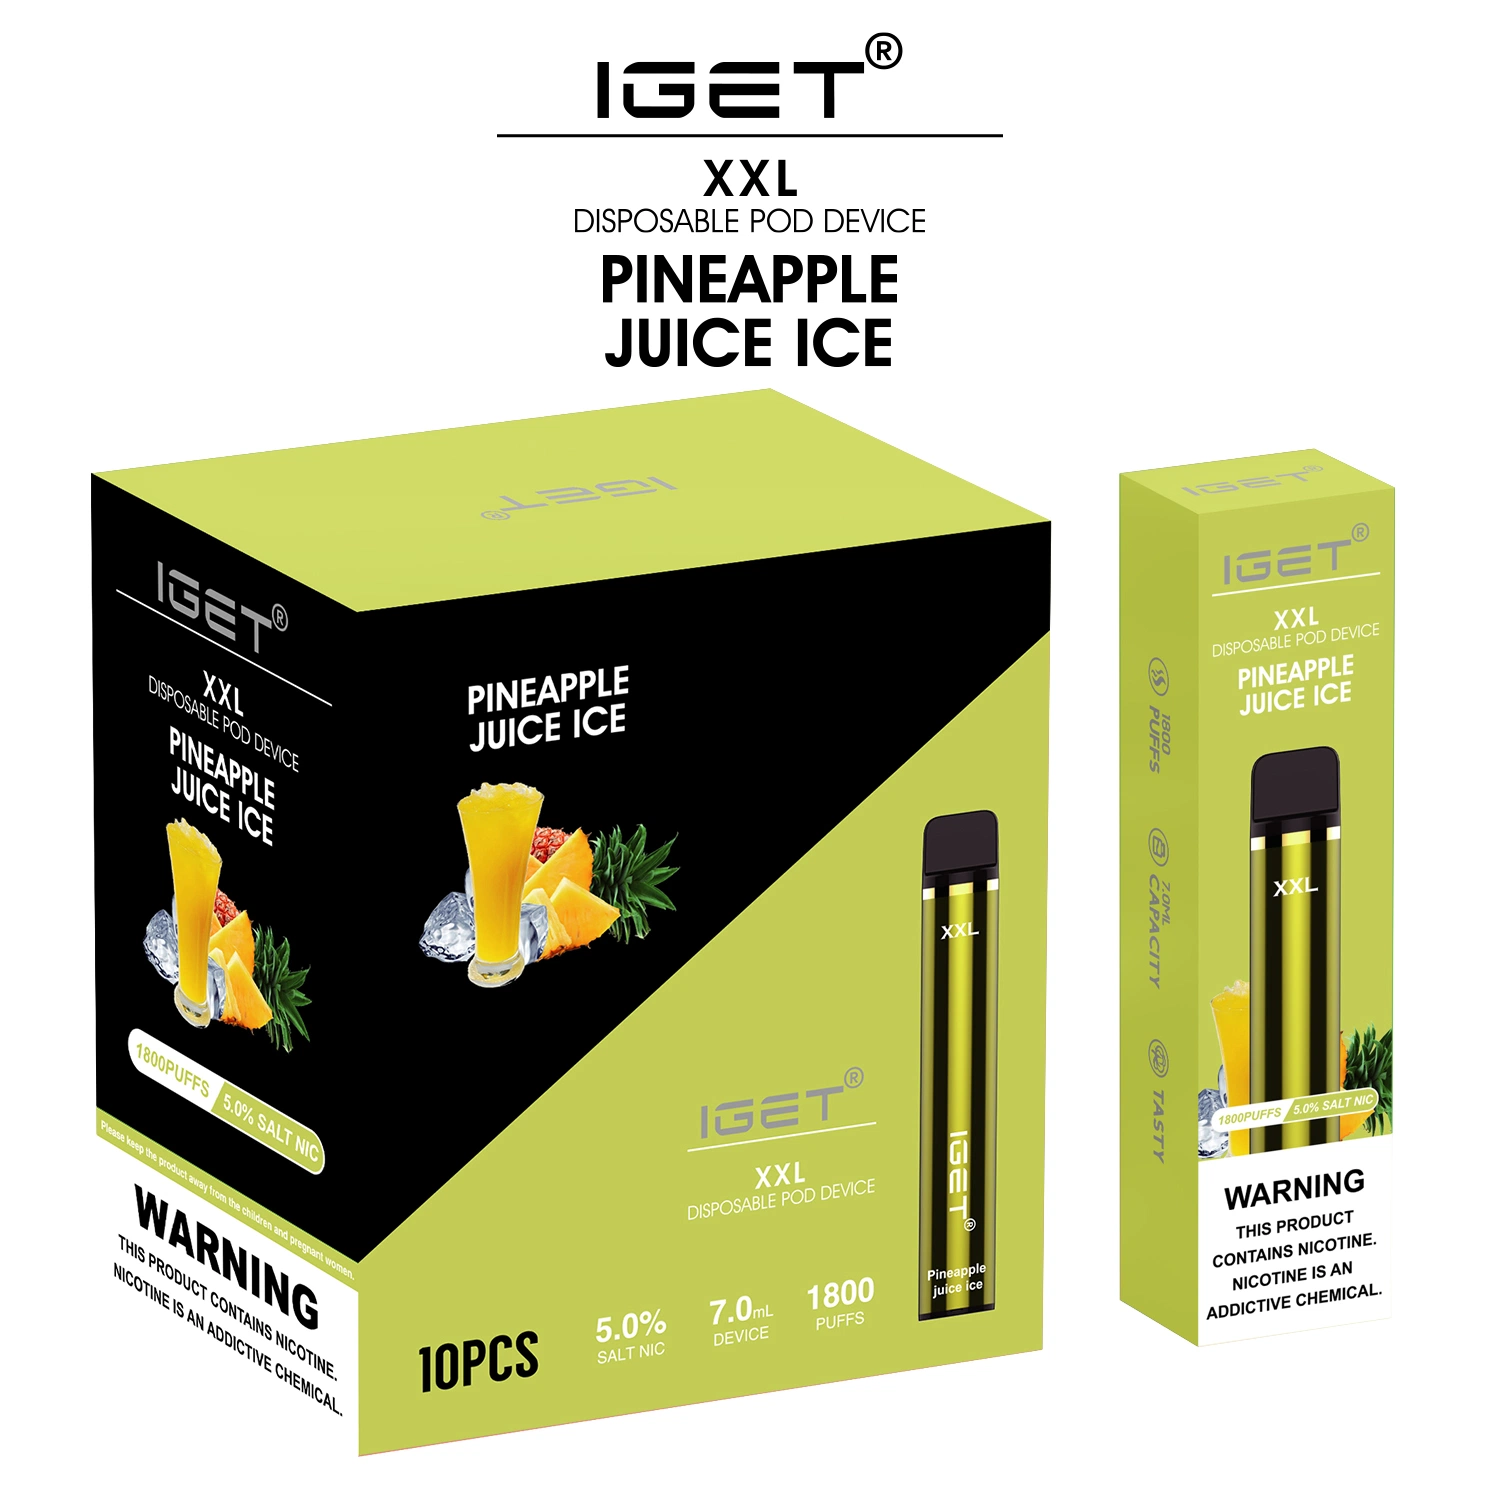 Tendencia Mini cigarrillo electrónico más grande de la marca Iget bocanadas 1800 inhalaciones Iget XXL